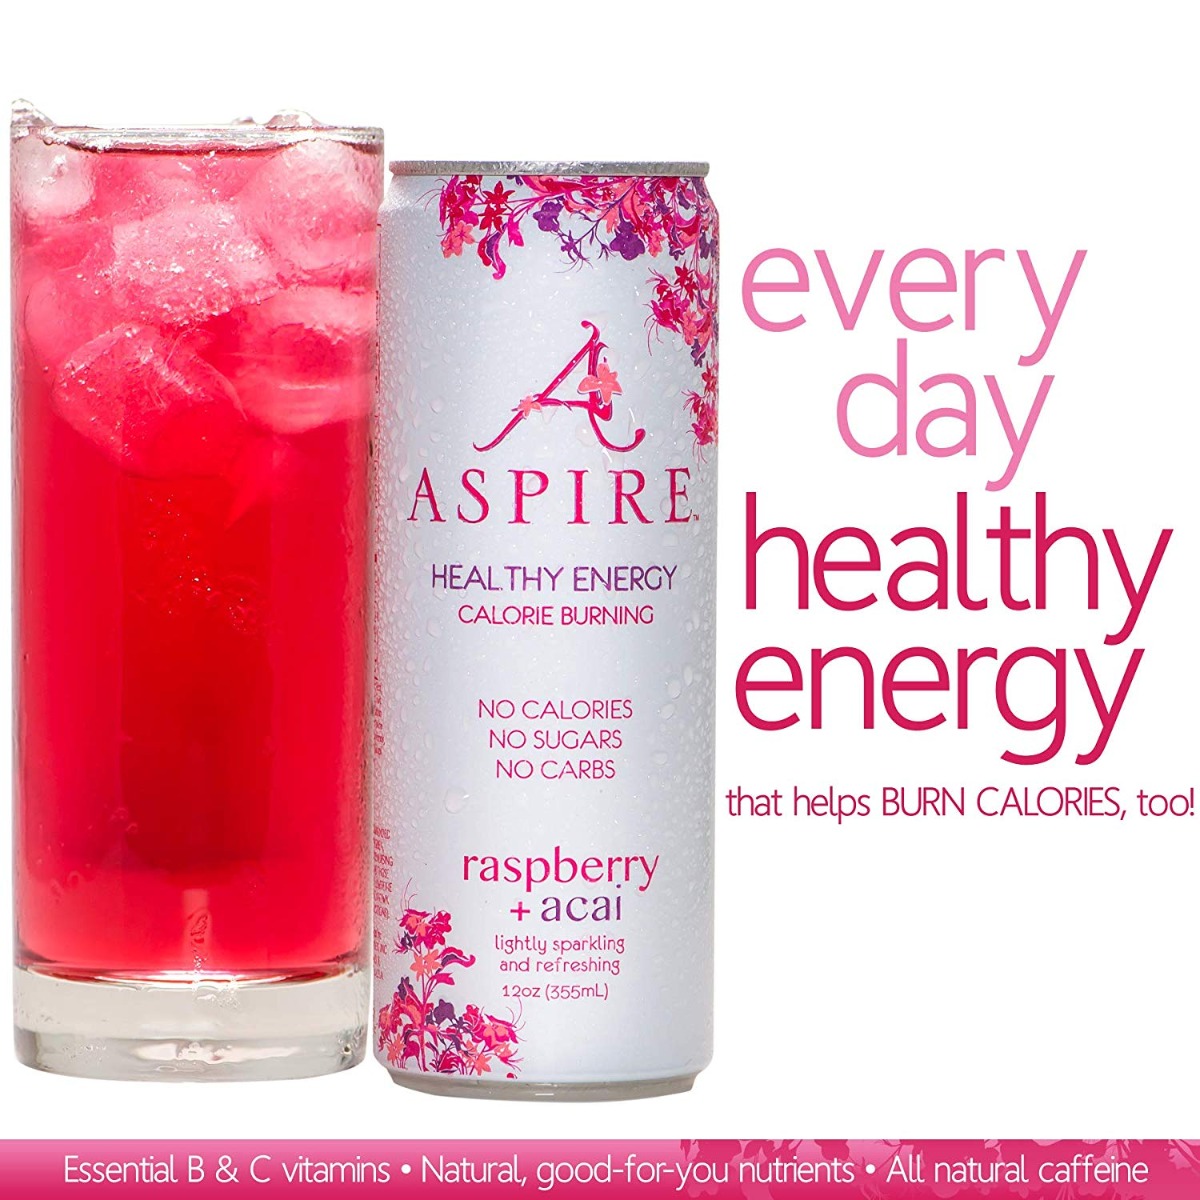 Khfm00314814 Raspberry Acai Healthy Energy Drink, 12 Fl Oz